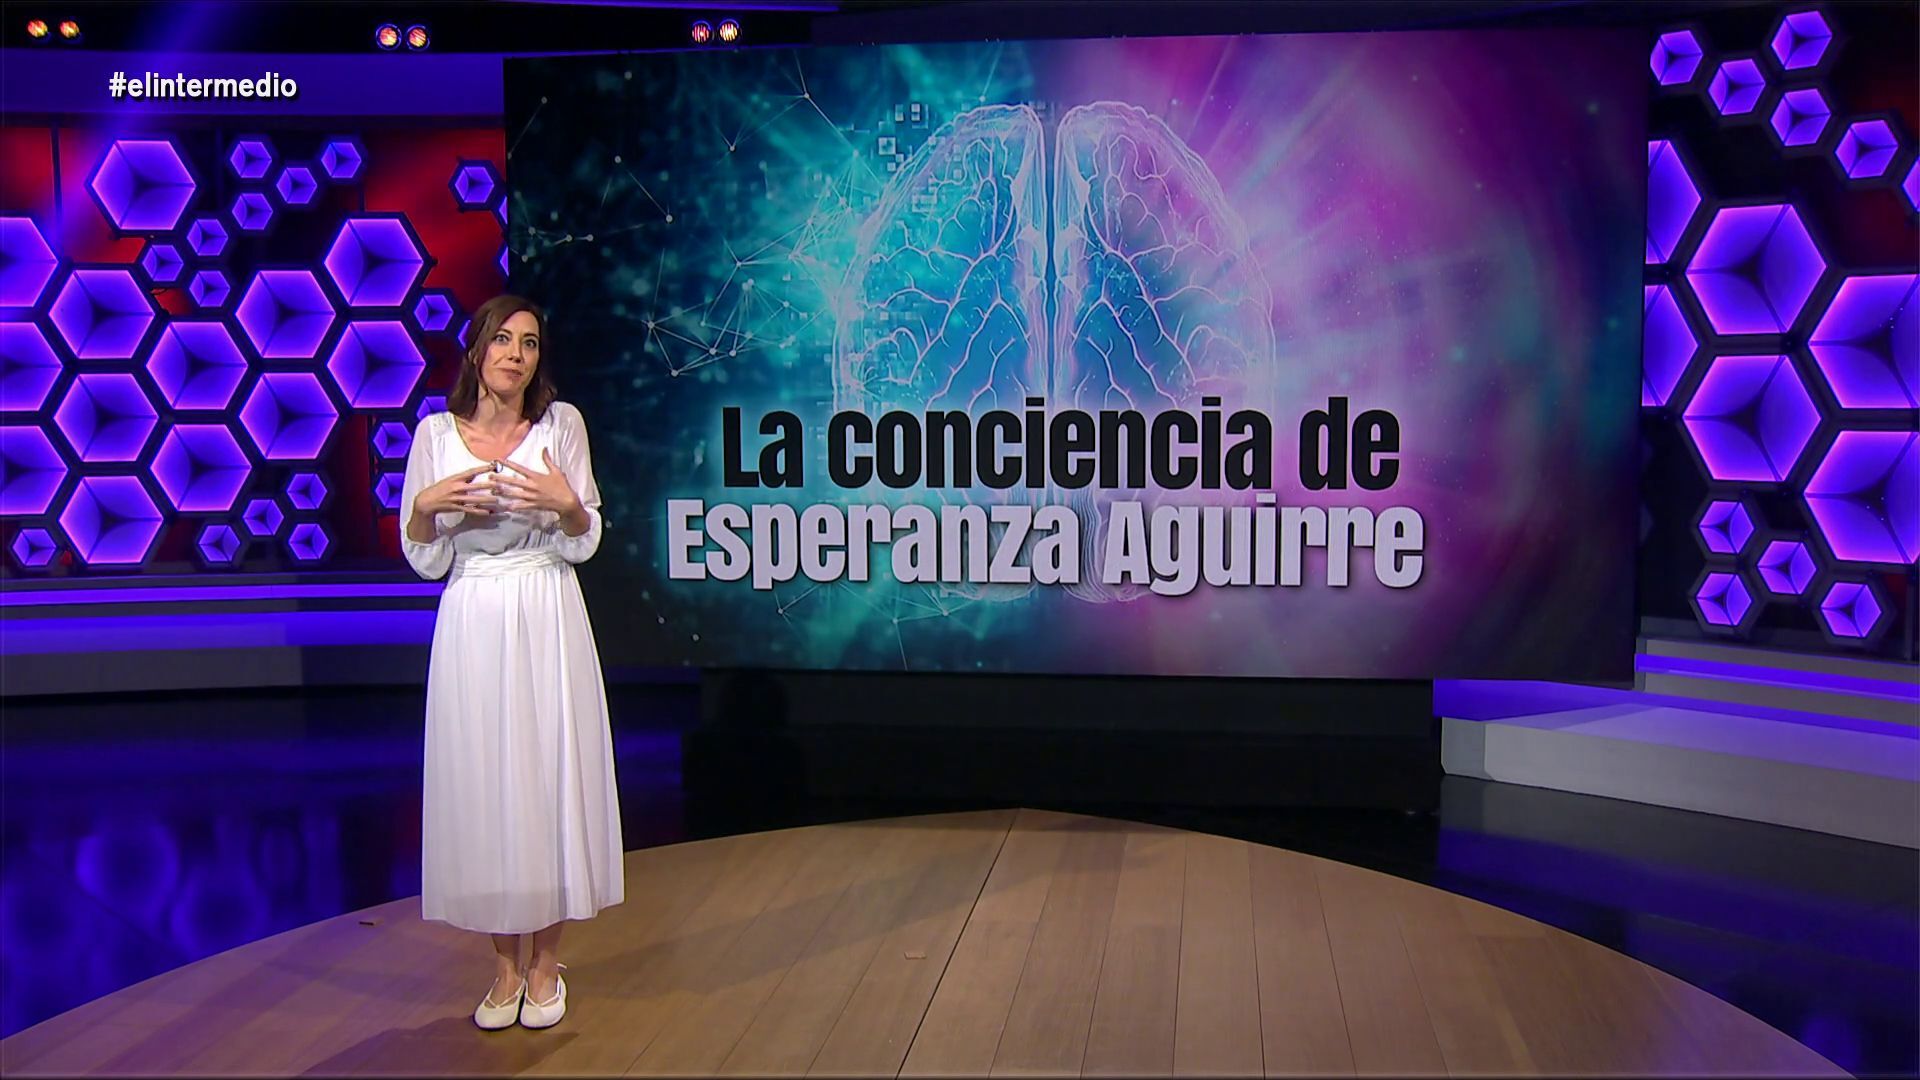 Temporada 1 (29-12-21) Cristina Gallego 'desvela' lo que hay detrás de la conciencia de Aguirre